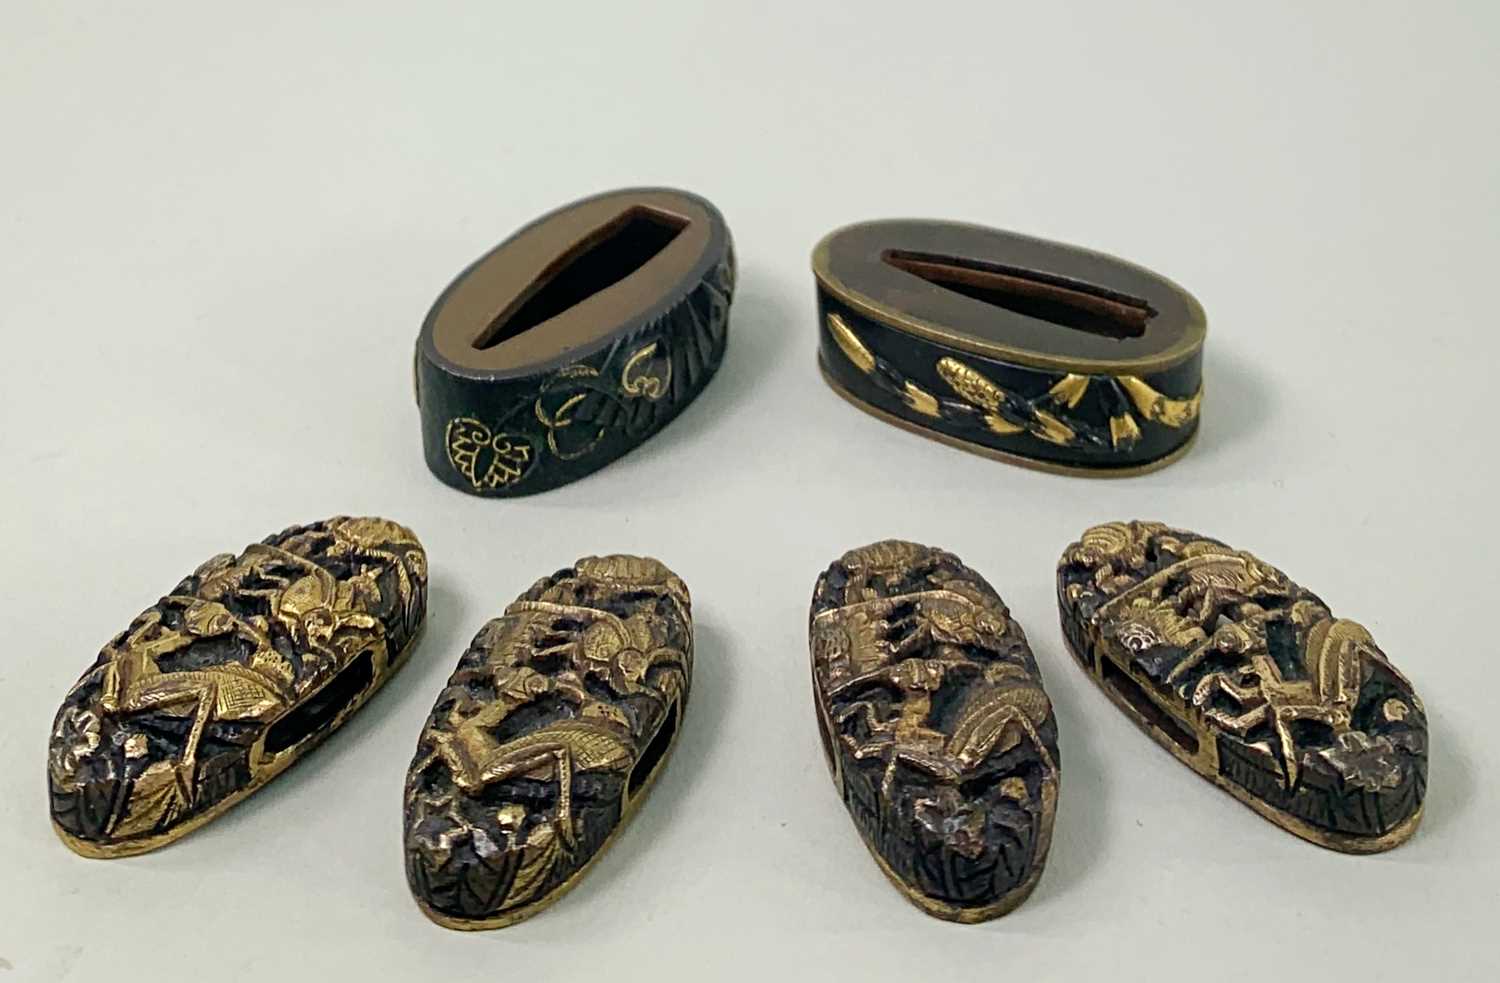 GROUP OF SIX JAPANESE SHAKUDO FUCHI KASHIRA, Edo Period, comprising two fuchi decorated with